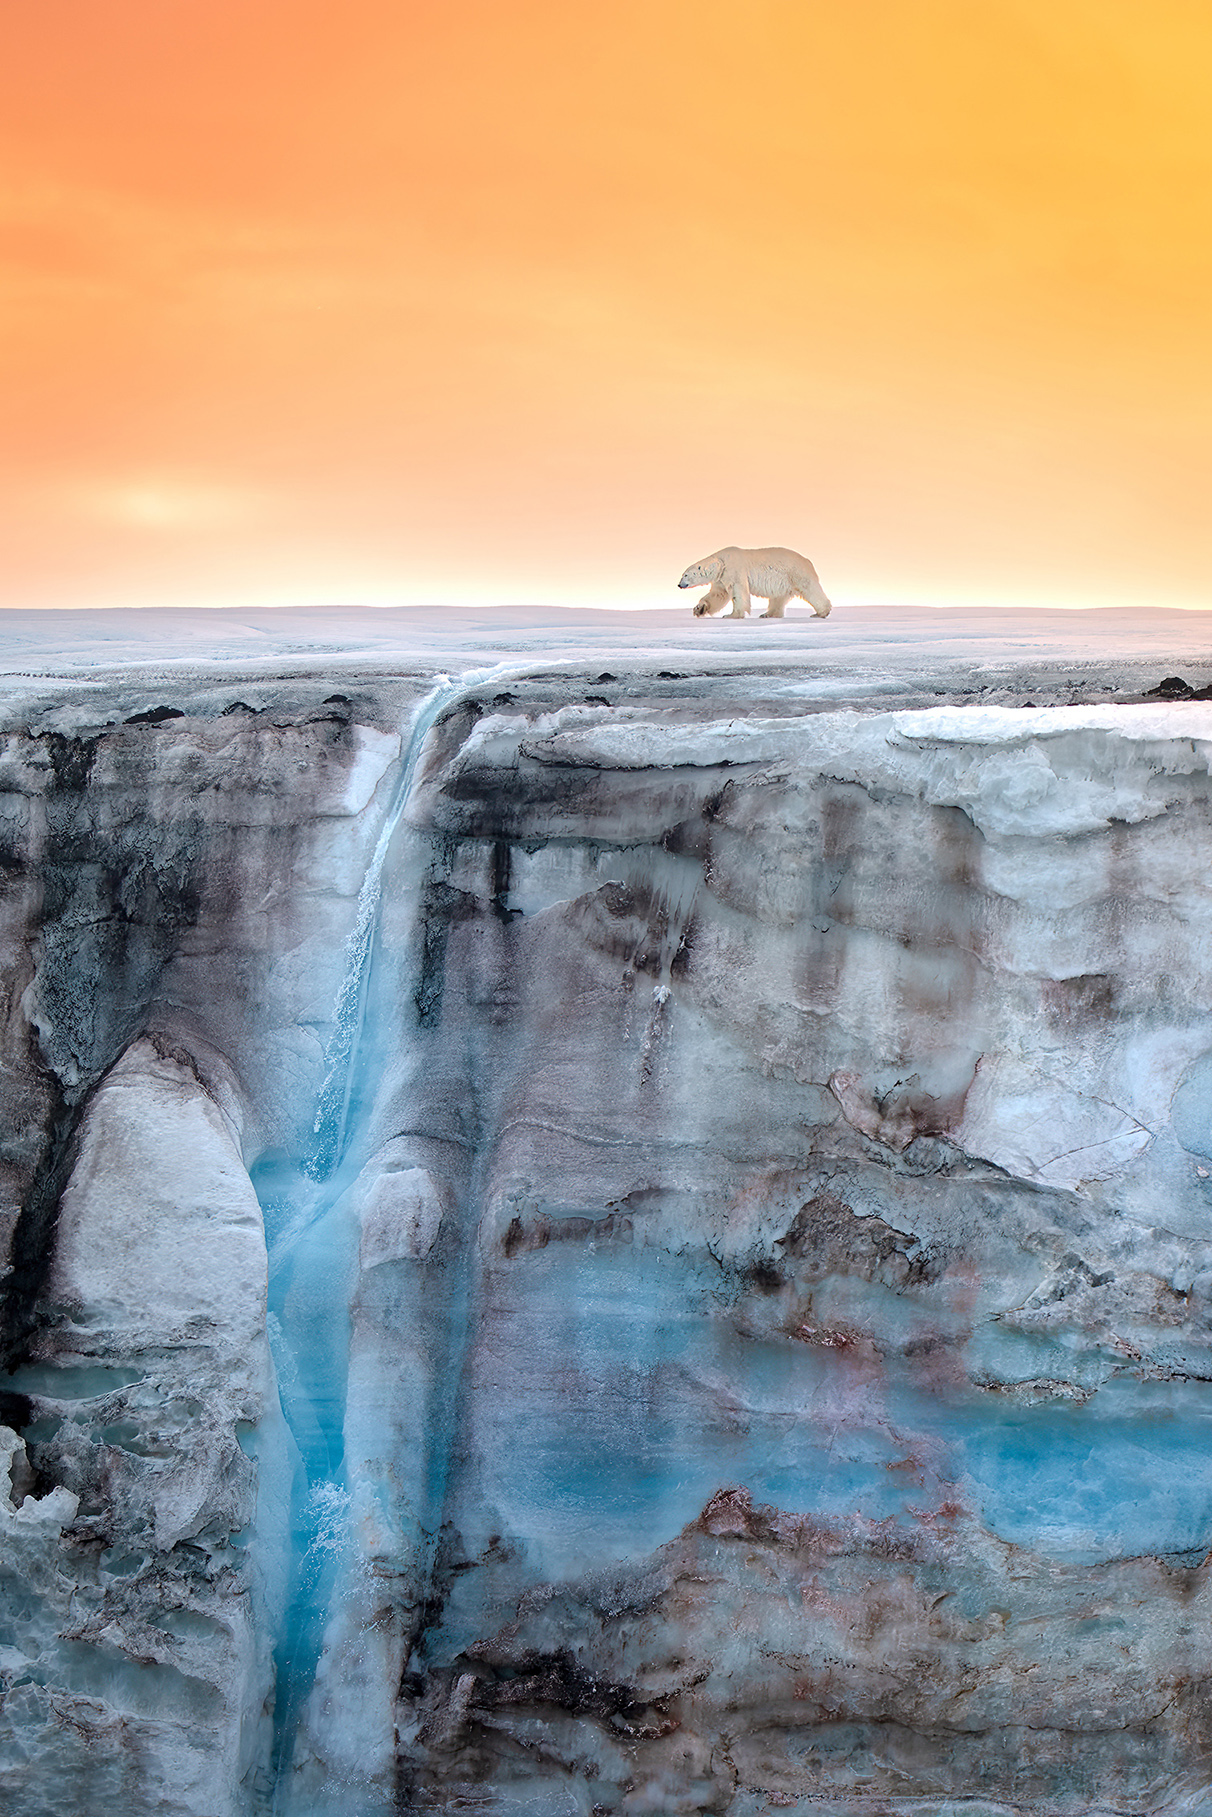 Φωτισμένη από τον ήλιο της Αρκτικής, μια πολική αρκούδα βαδίζει σε παγετώνα που κοσμείται από έναν καταρράκτη